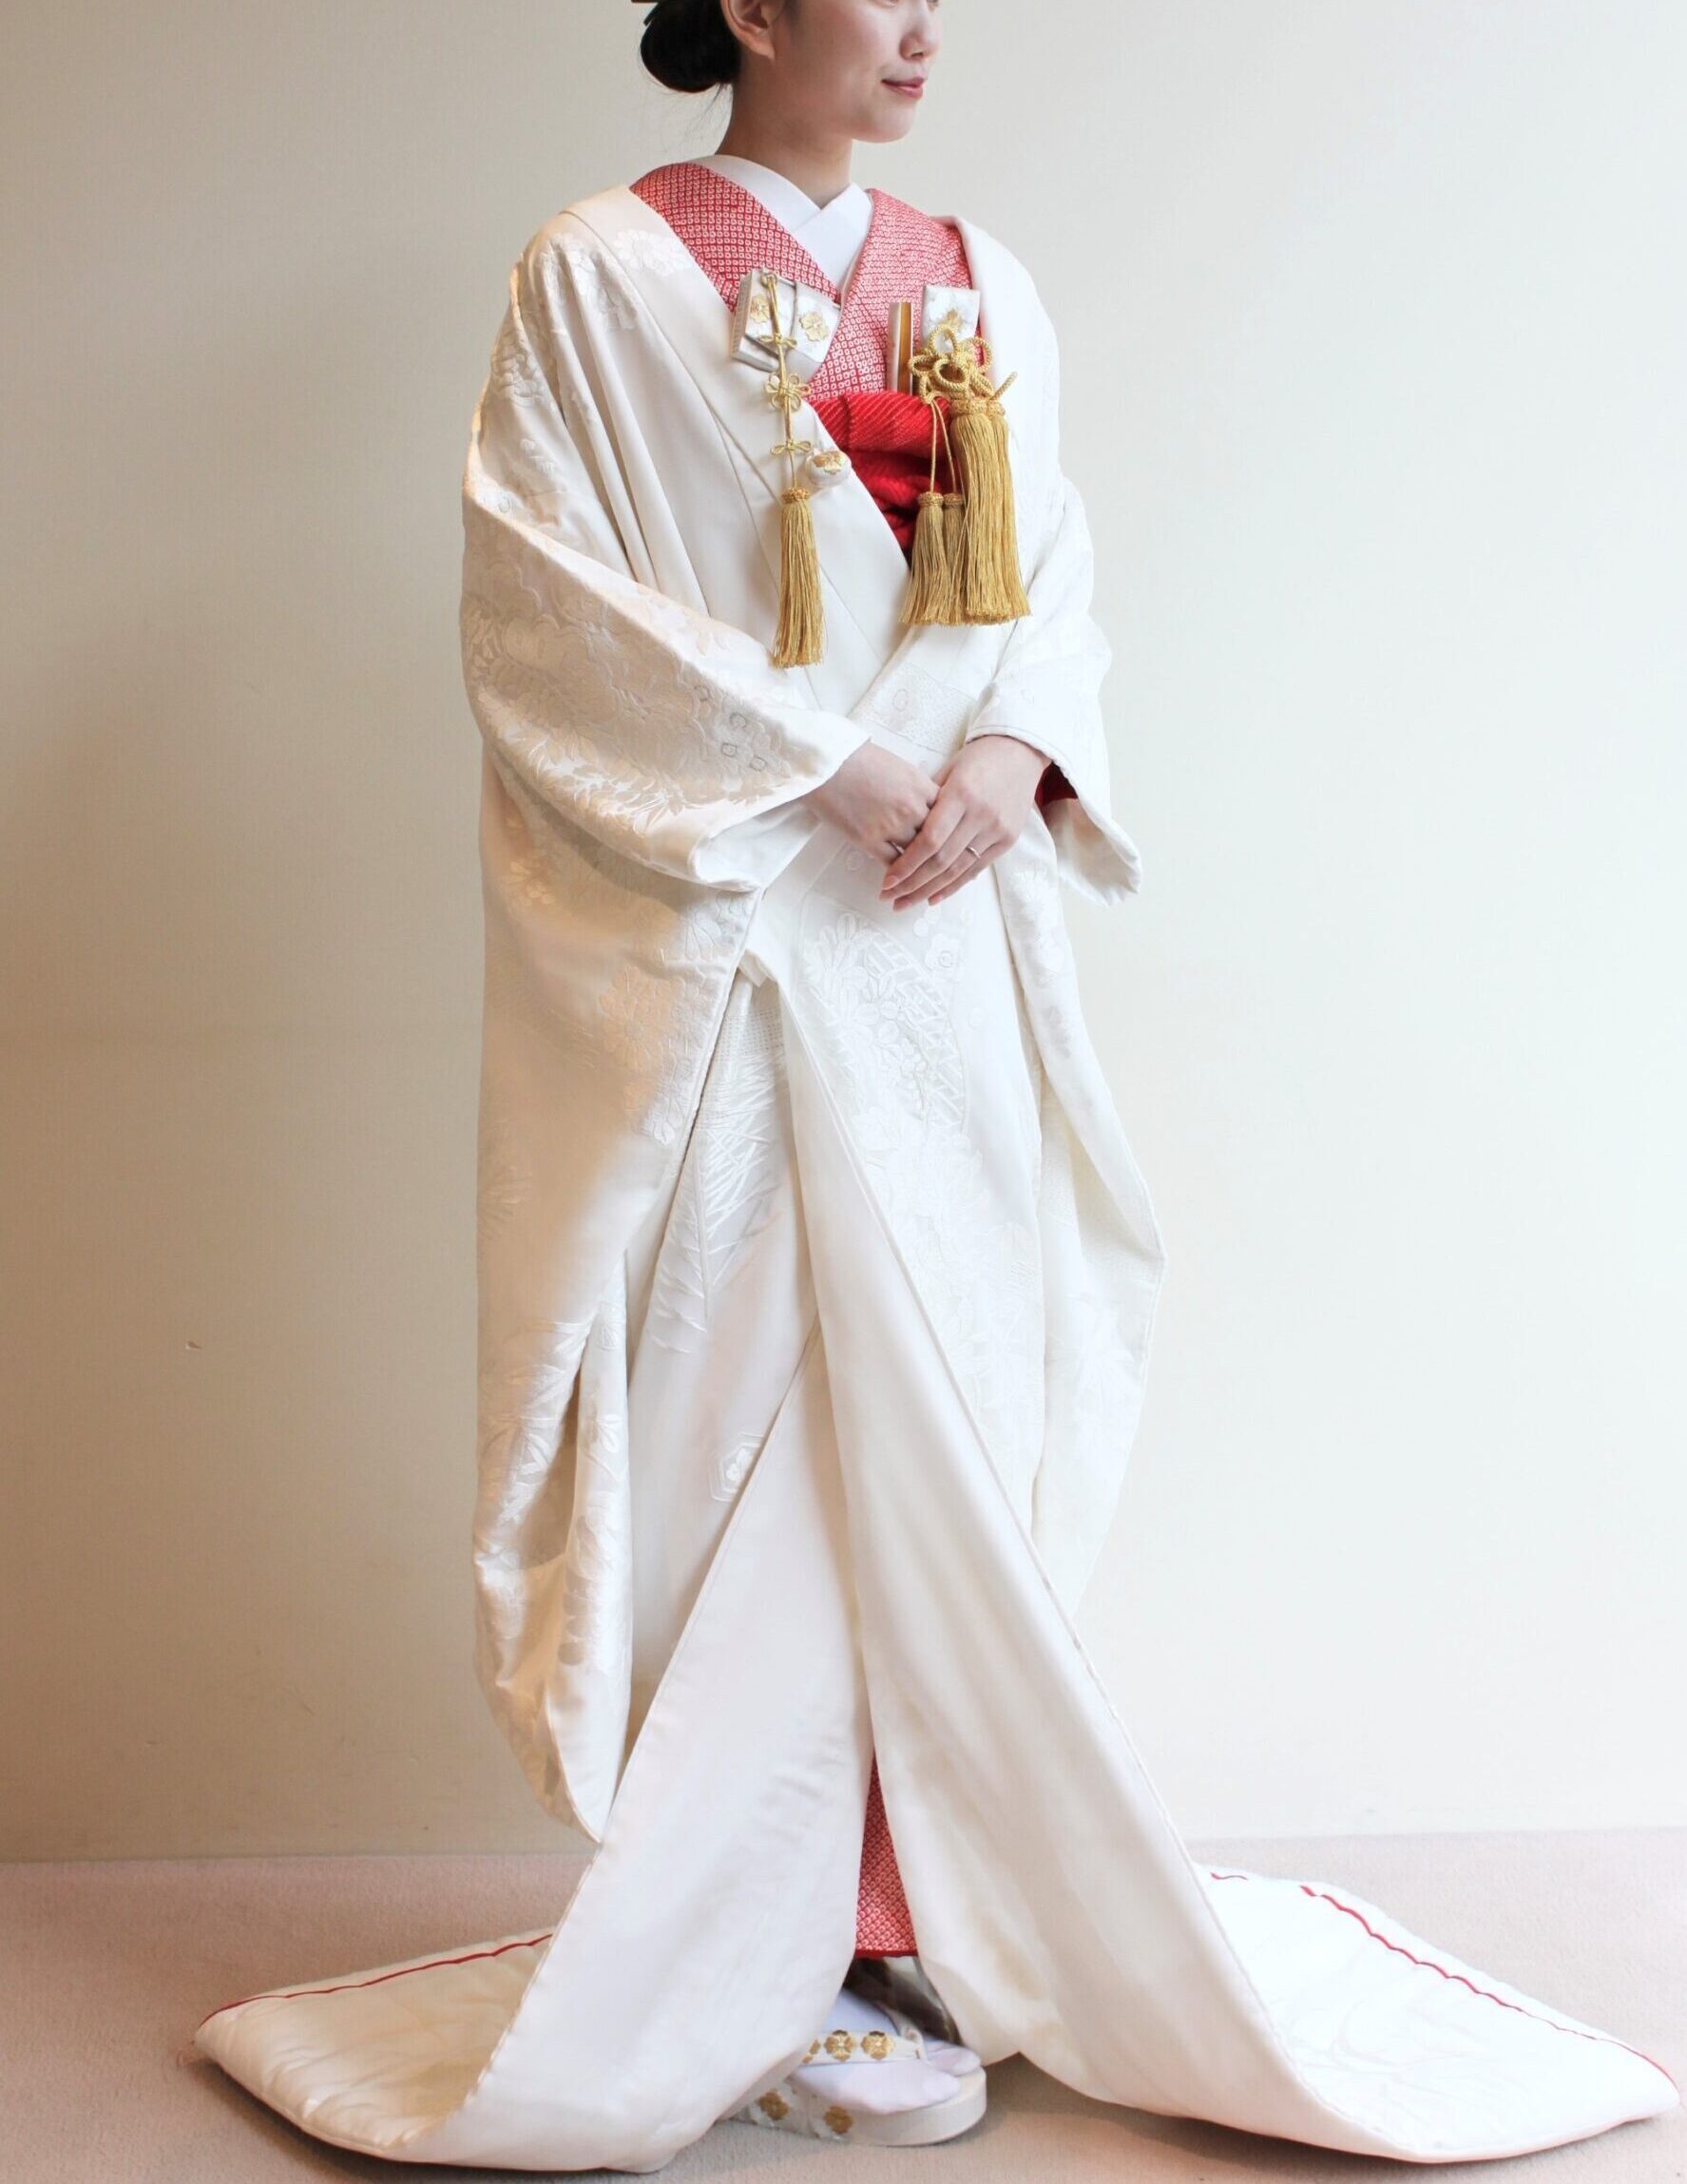 ザトリートドレッシング京都店の専属会場であるザソウドウヒガシヤマ京都でお式を挙げられる花嫁にオススメの色掛下のコーディネート